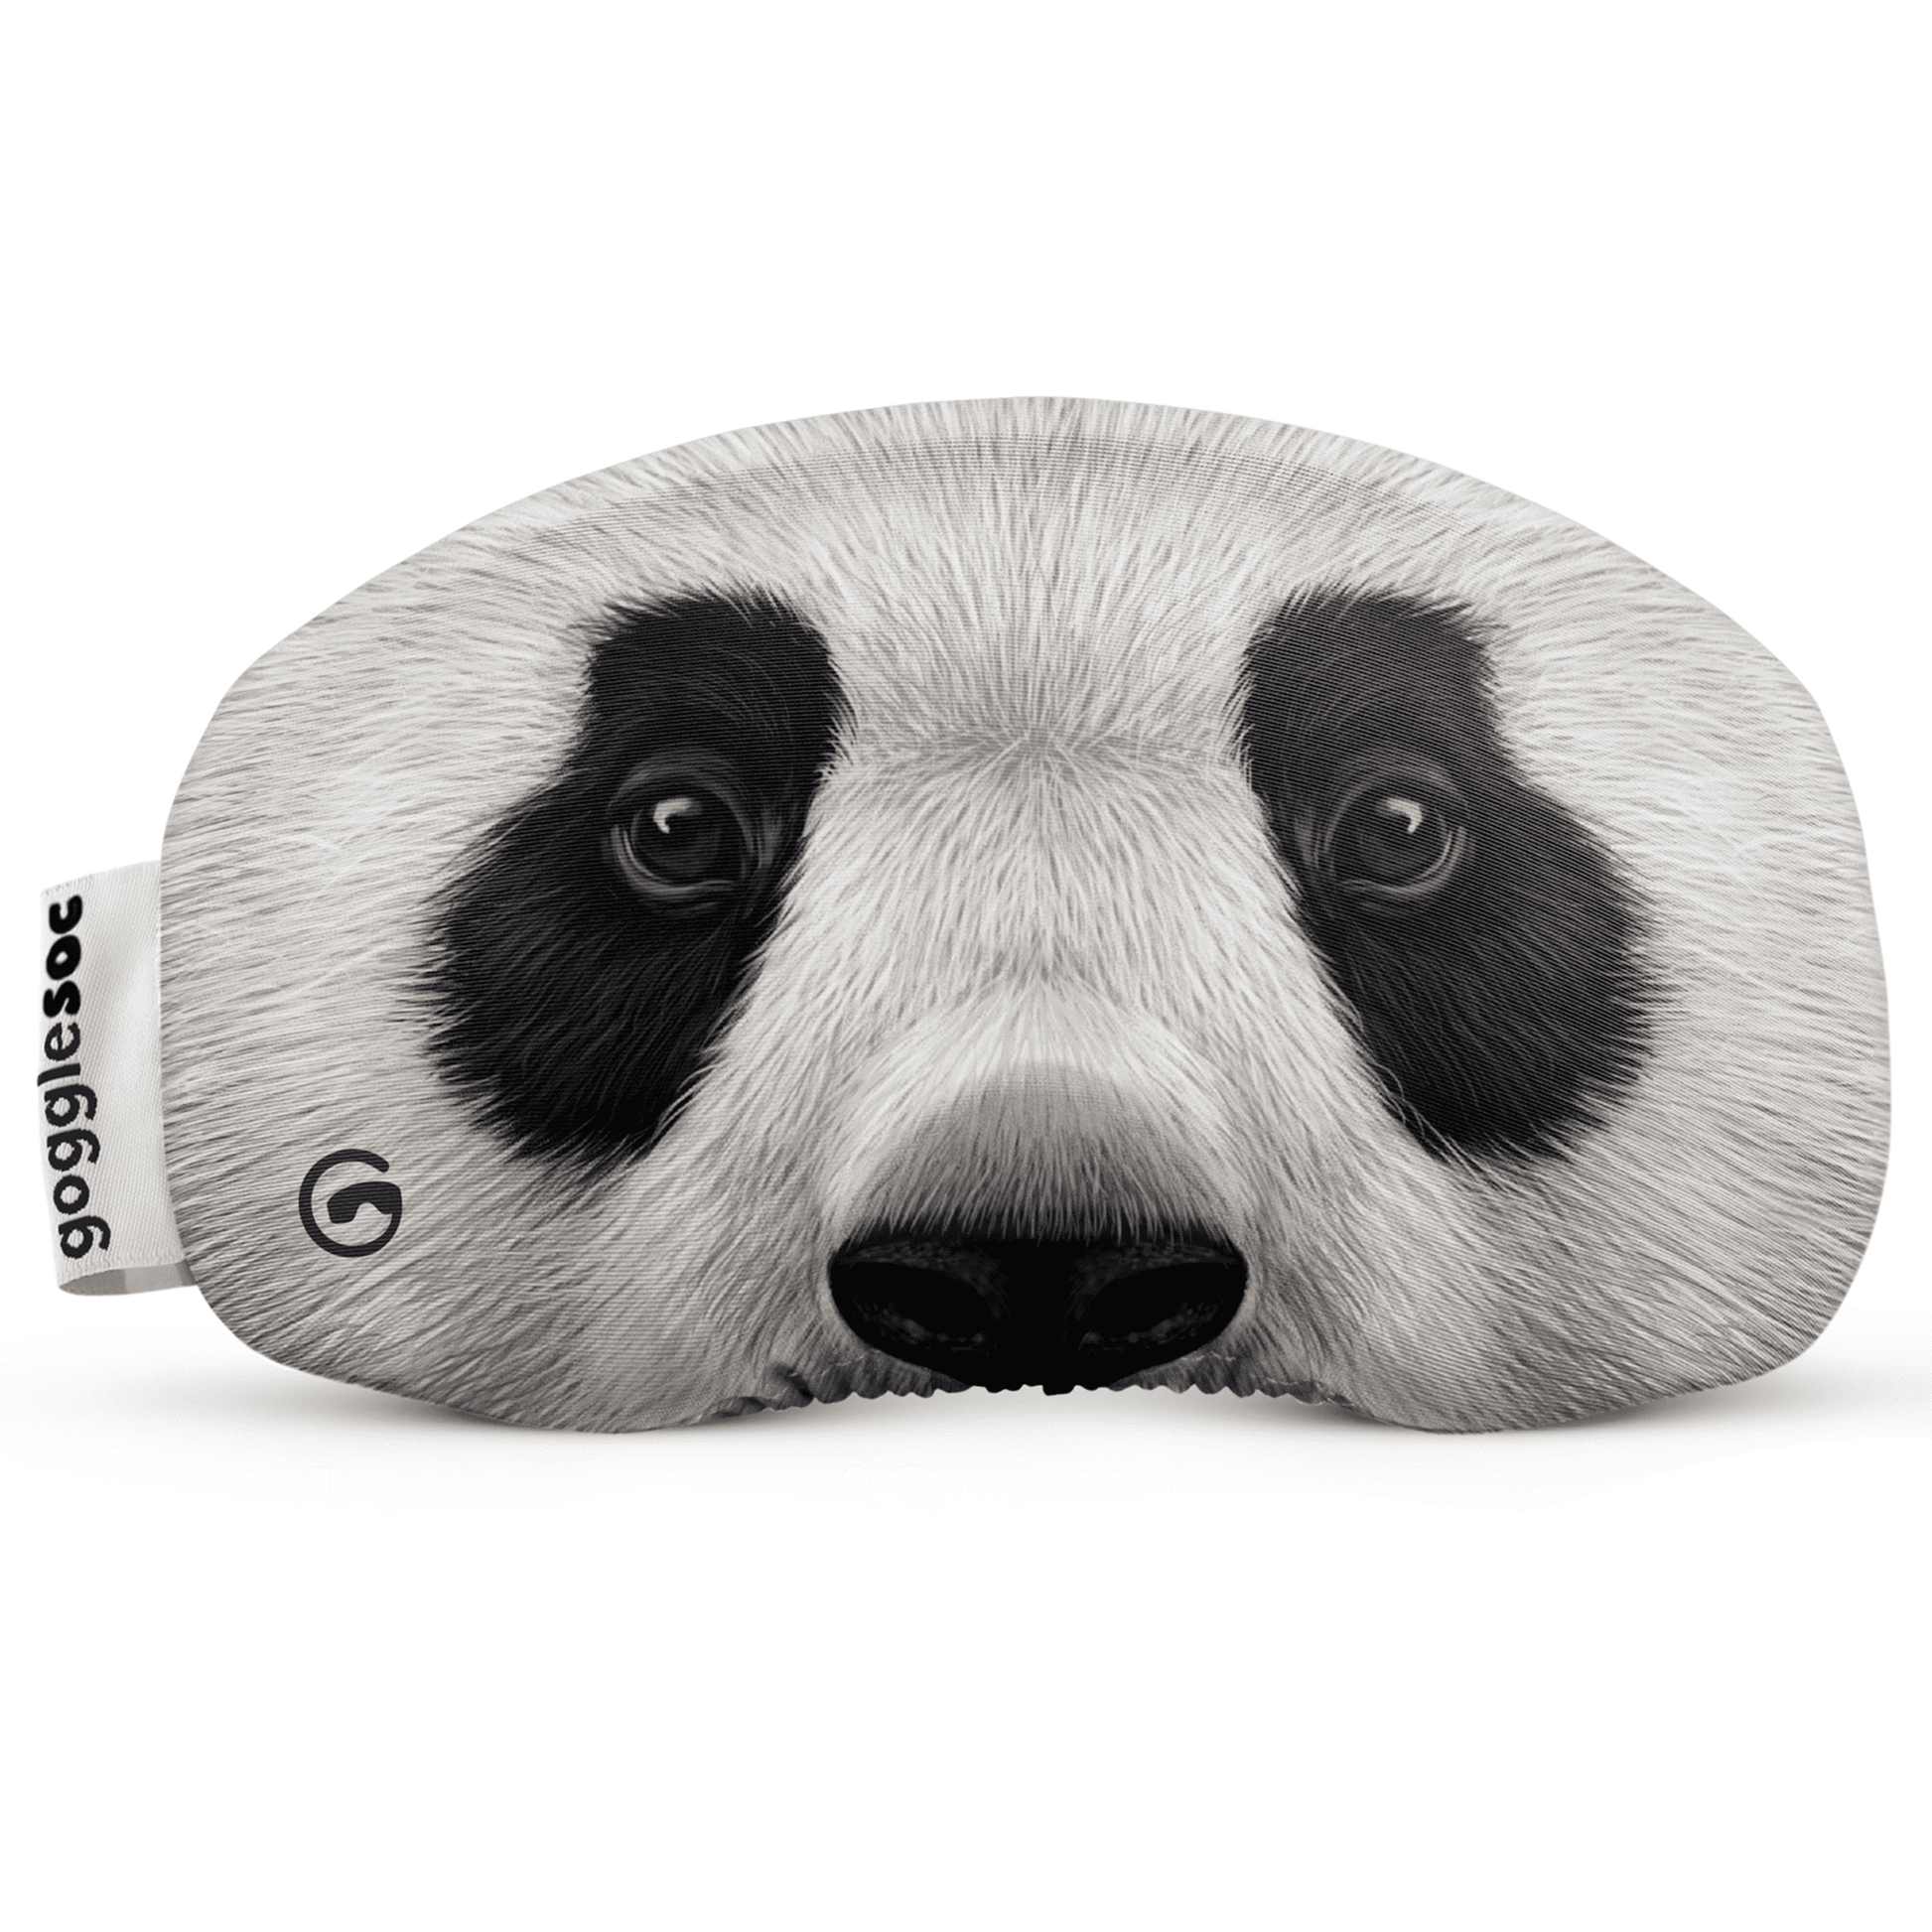 Gogglesoc - Panda Soc